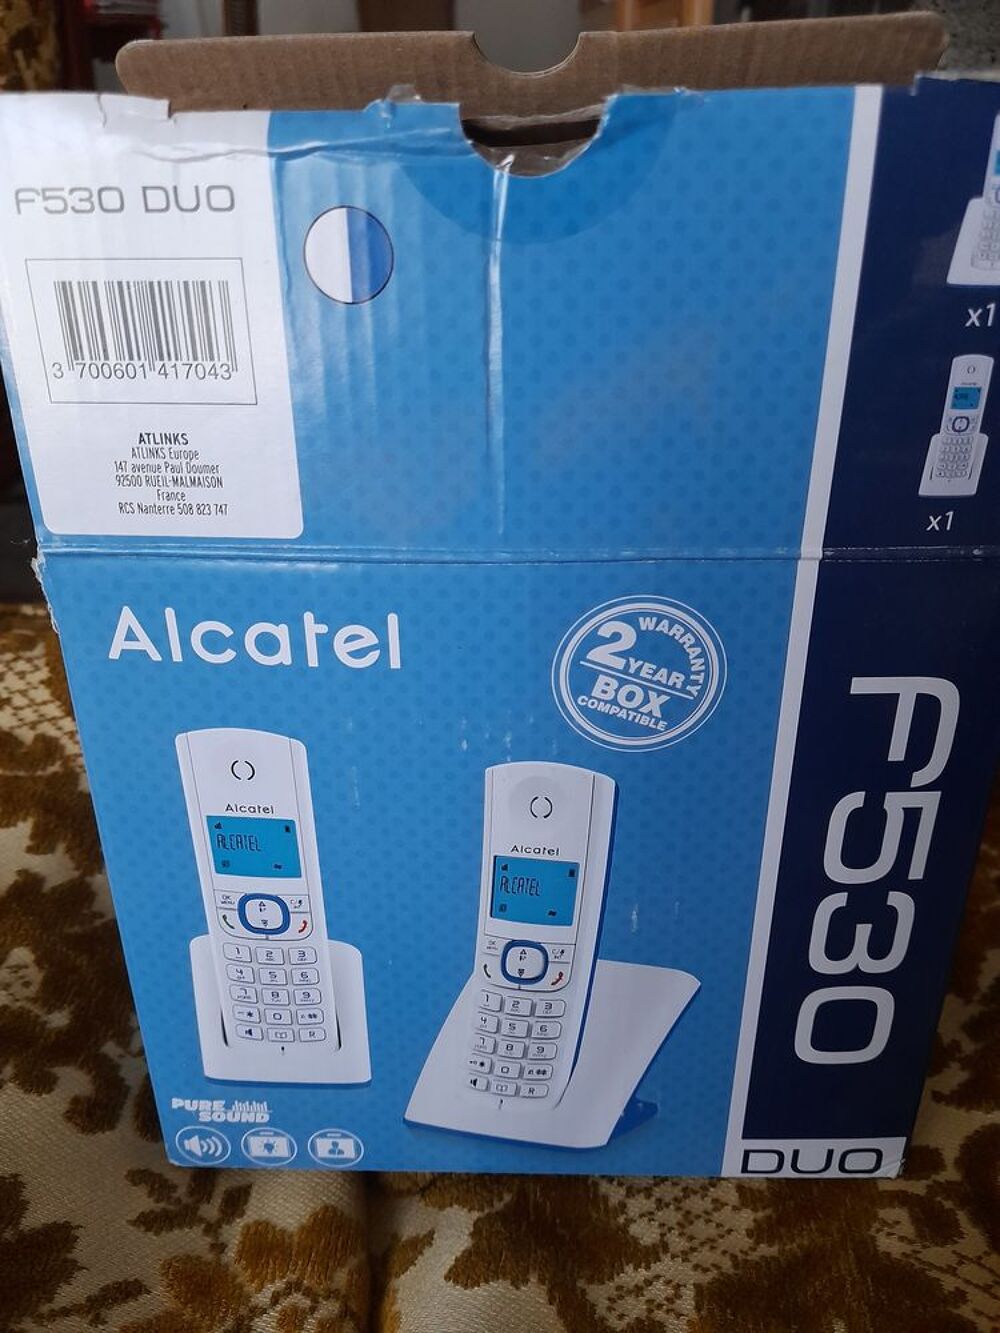 T&eacute;l&eacute;phone Alcatel duo f530 Tlphones et tablettes